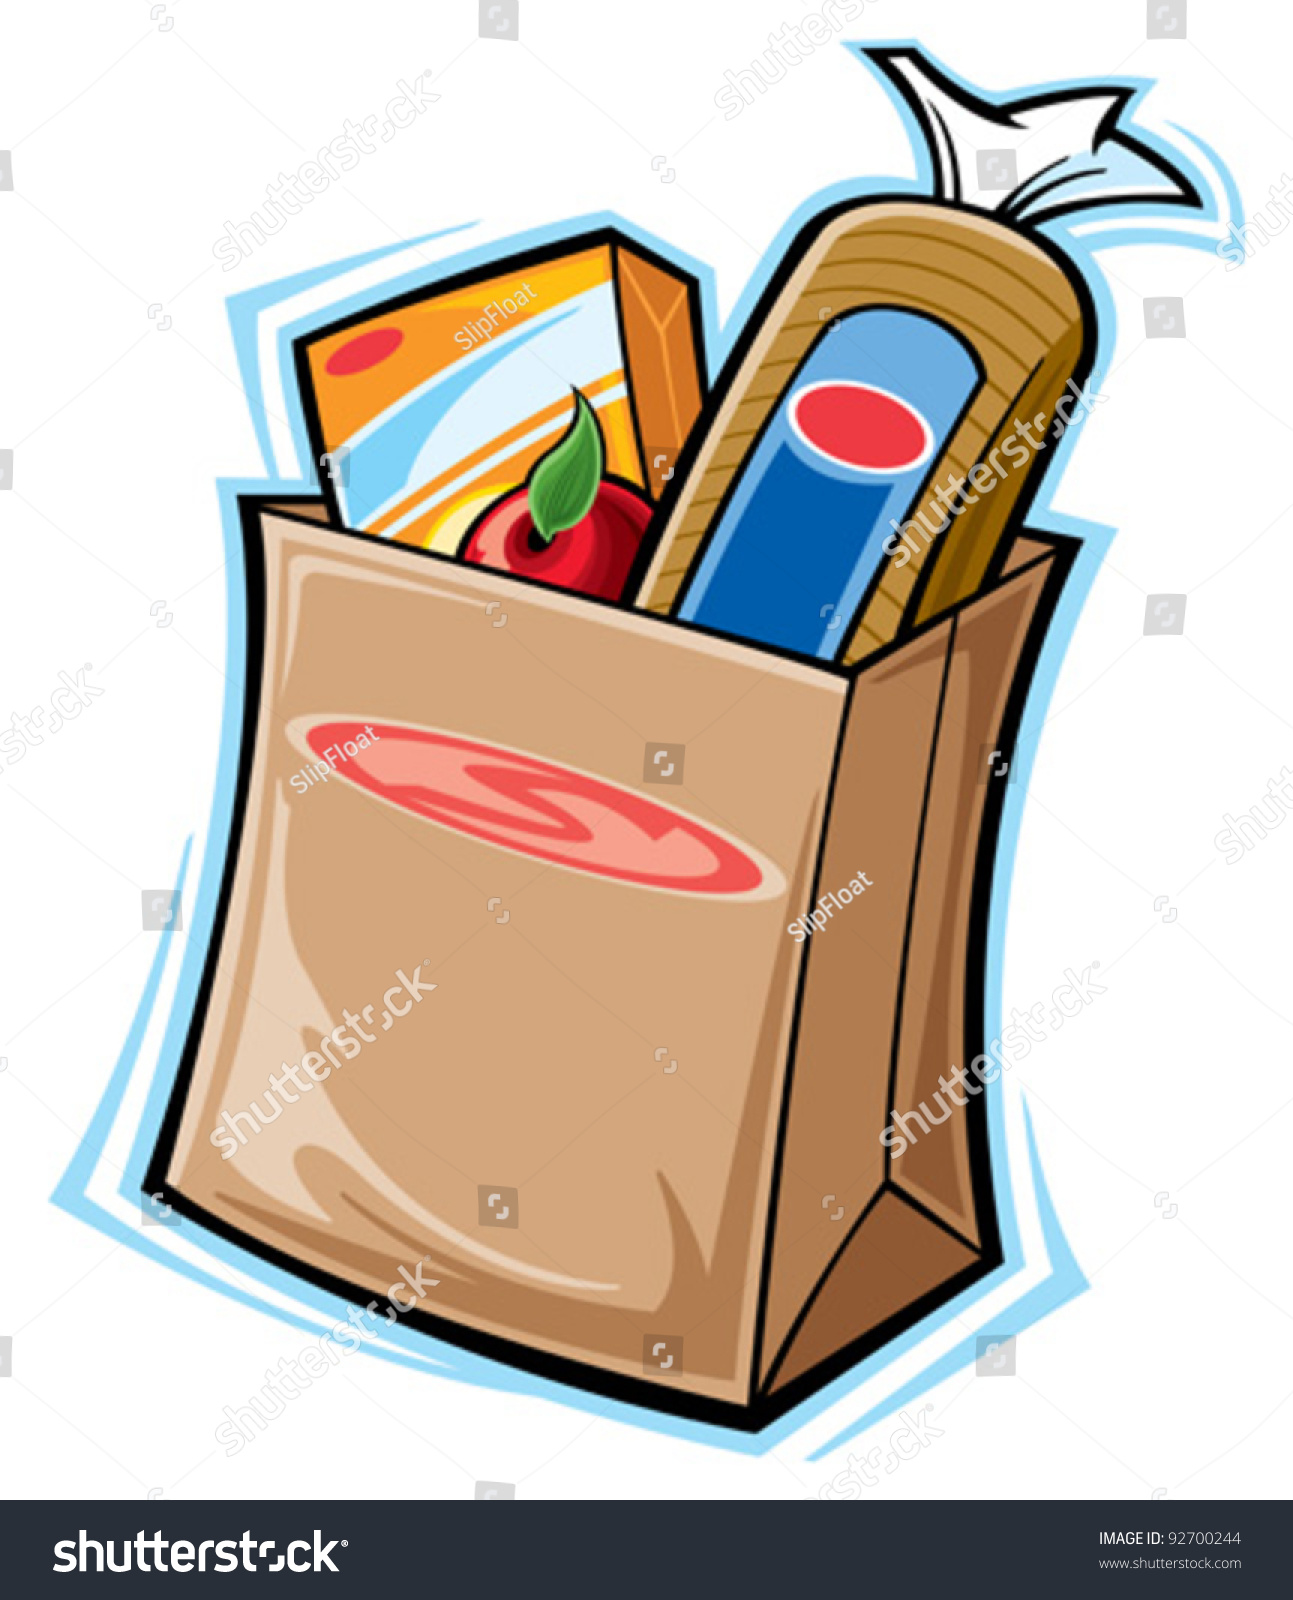 Grocery Bag Stock Vector Illustration 92700244 : Shutterstock